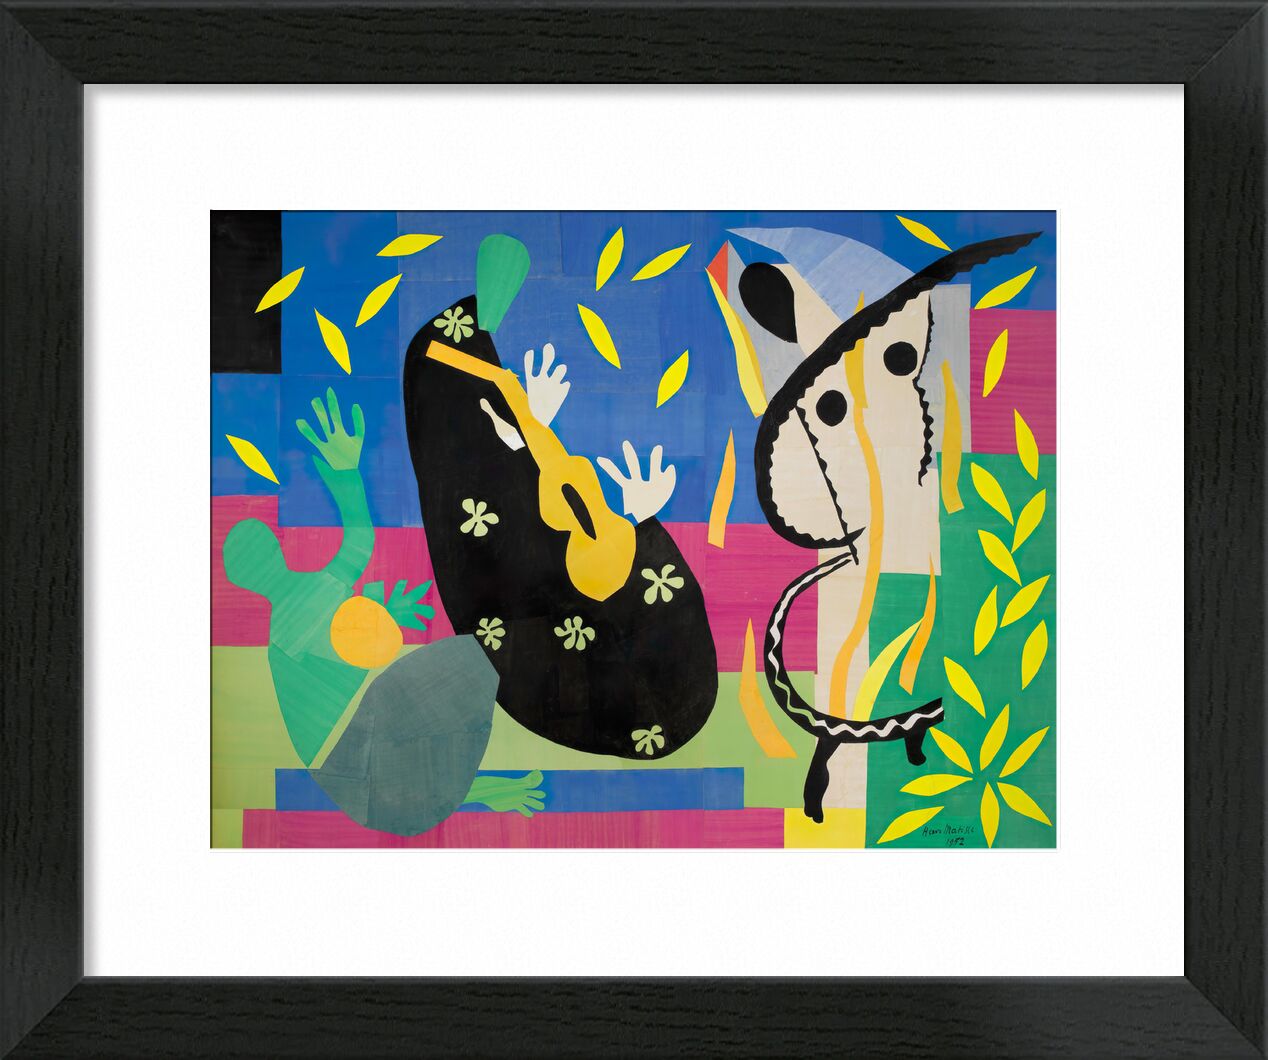 Die Traurigkeit des Königs - Matisse von Bildende Kunst, Prodi Art, Matisse, Henri Matisse, König, Musik-, Zeichnung, Collage, Traurigkeit